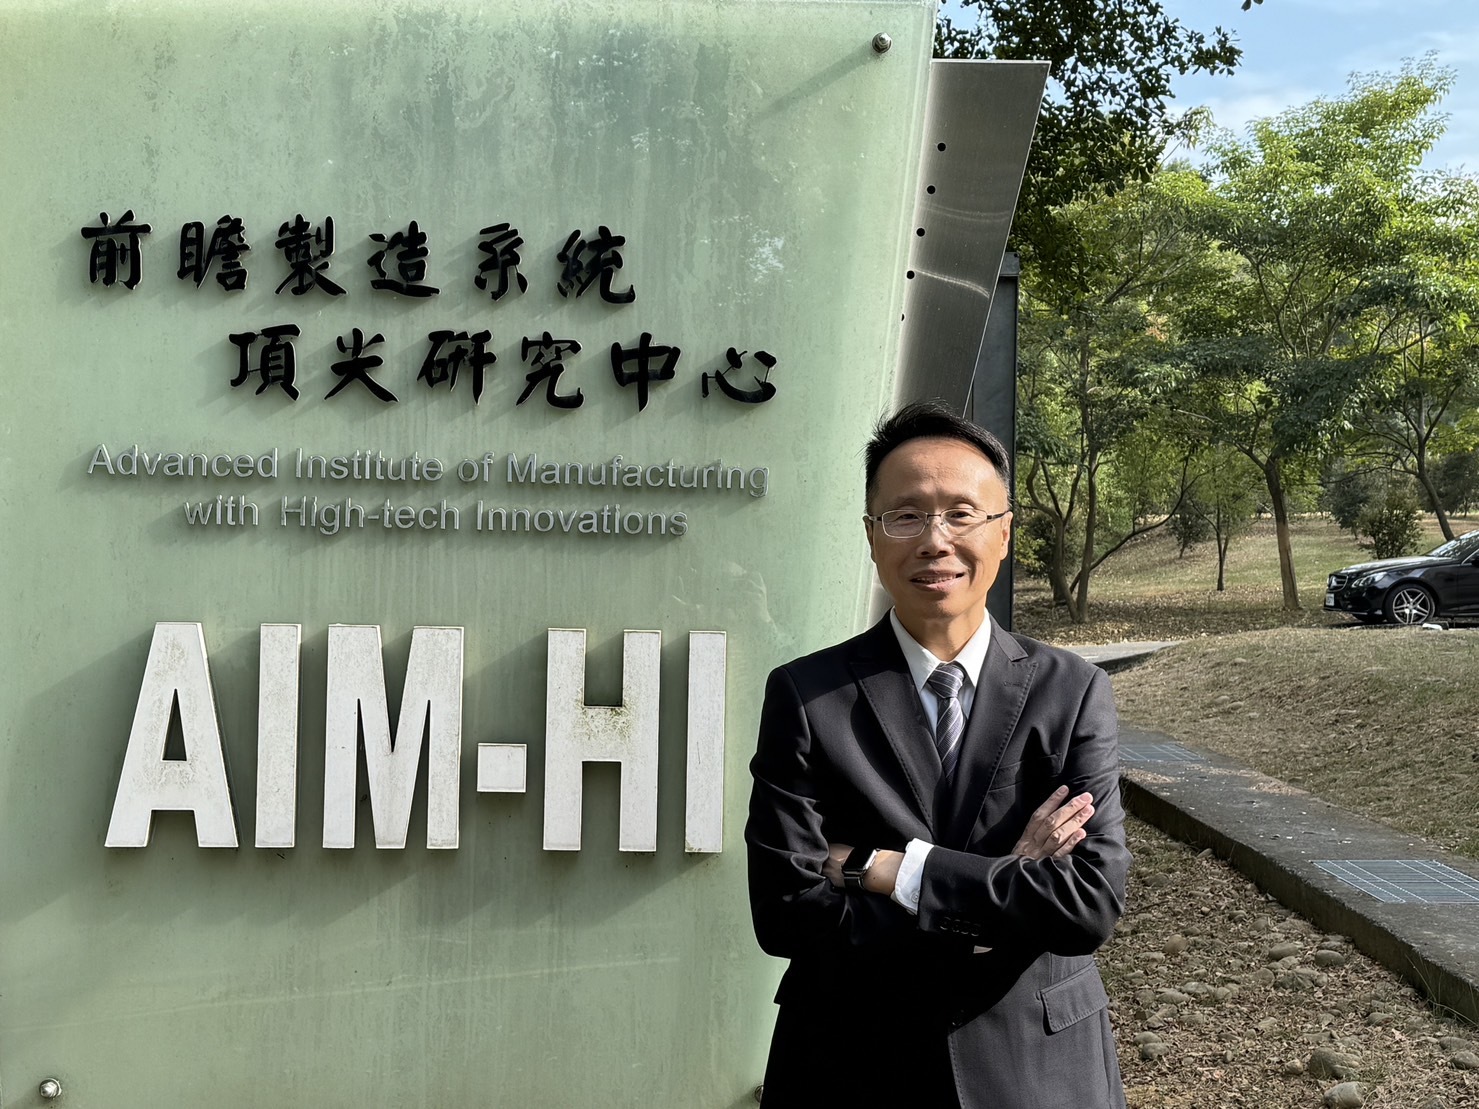 Prof. De-Shin Liu